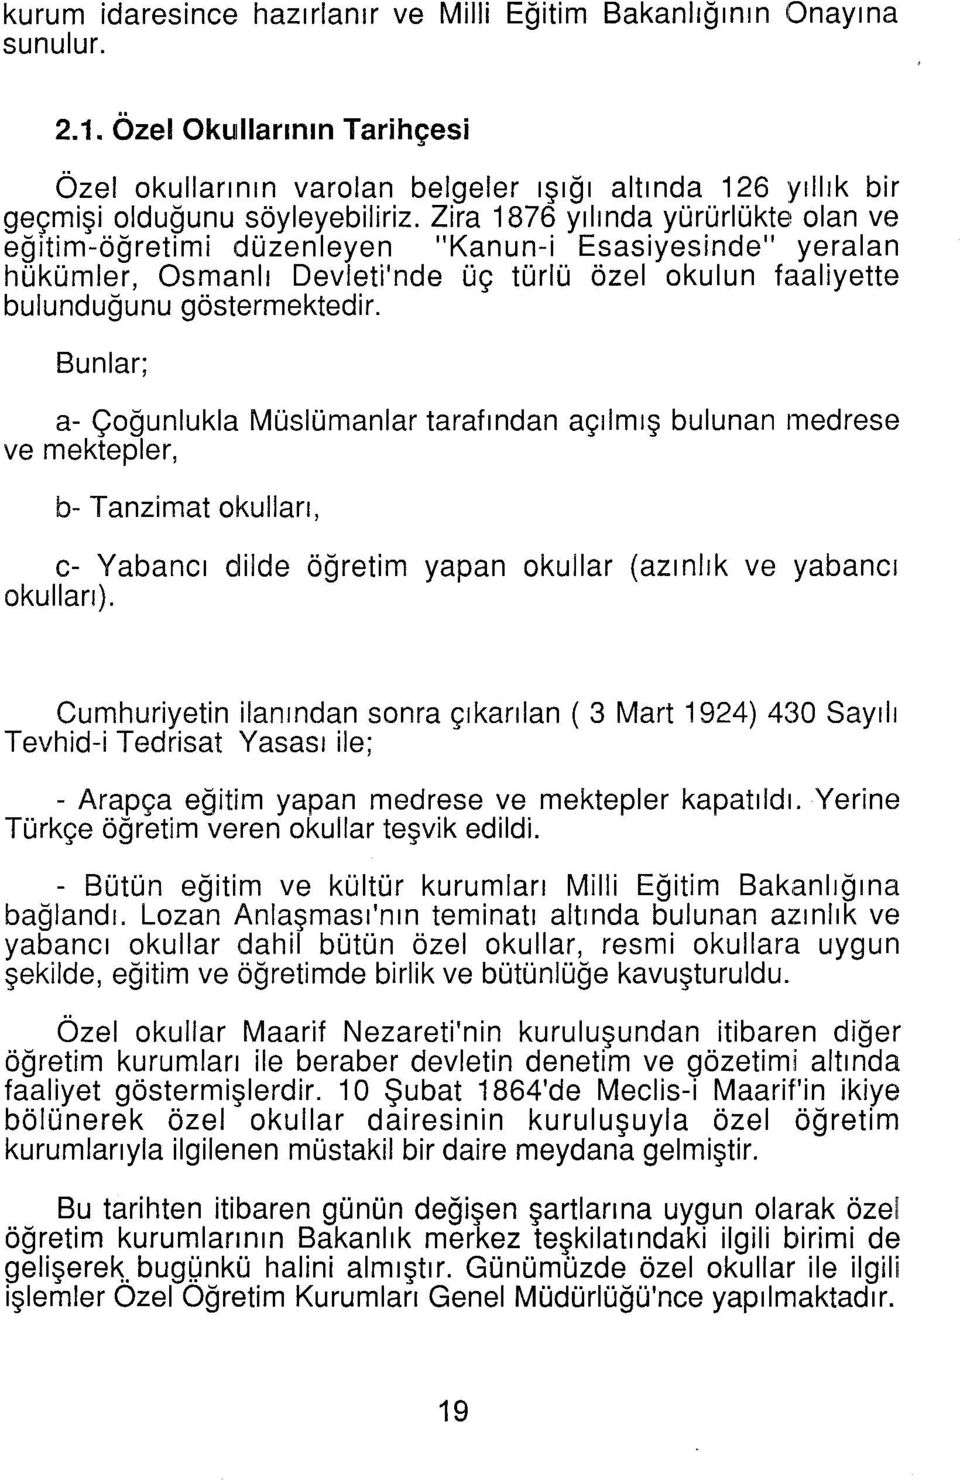 Zira 1876 yılında yürürlükte olan ve eğitim-öğretimi düzenleyen "Kanun-i Esasiyesinde" yeralan hükümler, Osmanlı Devleti'nde üç türlü özel okulun faaliyette bulunduğunu göstermektedir.